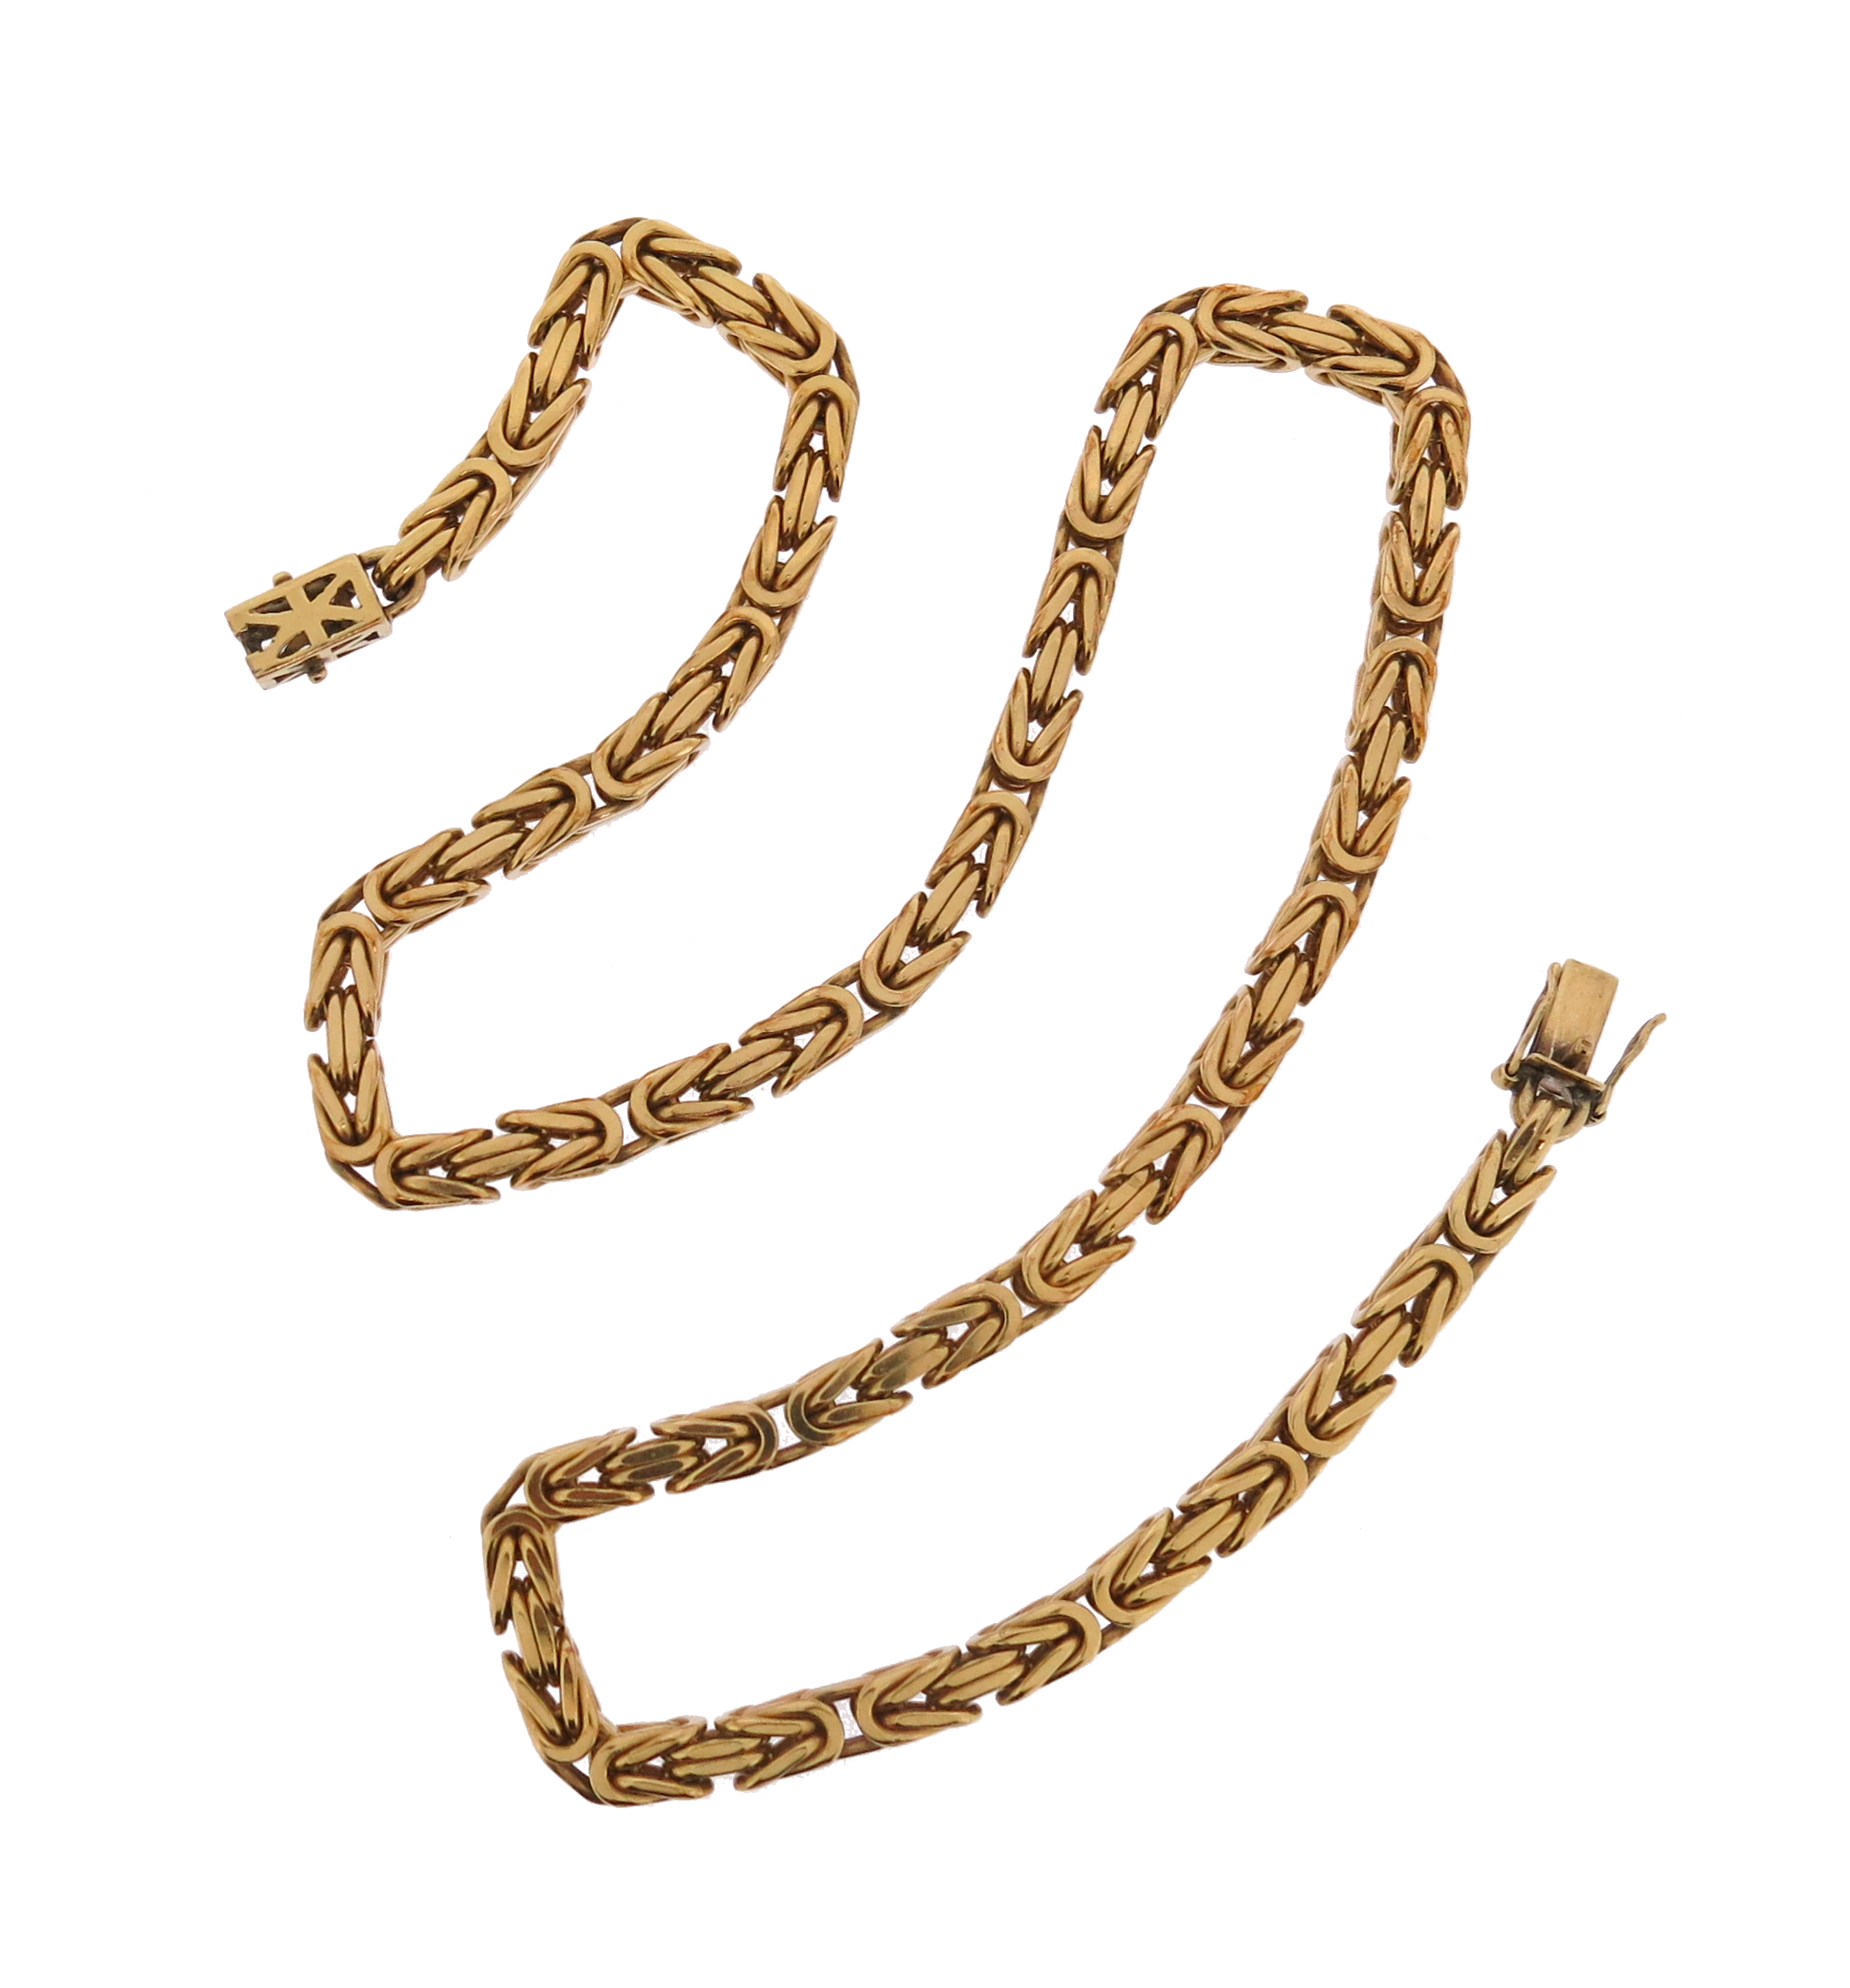 A fancy-link gold necklace, 58cm long, 120g